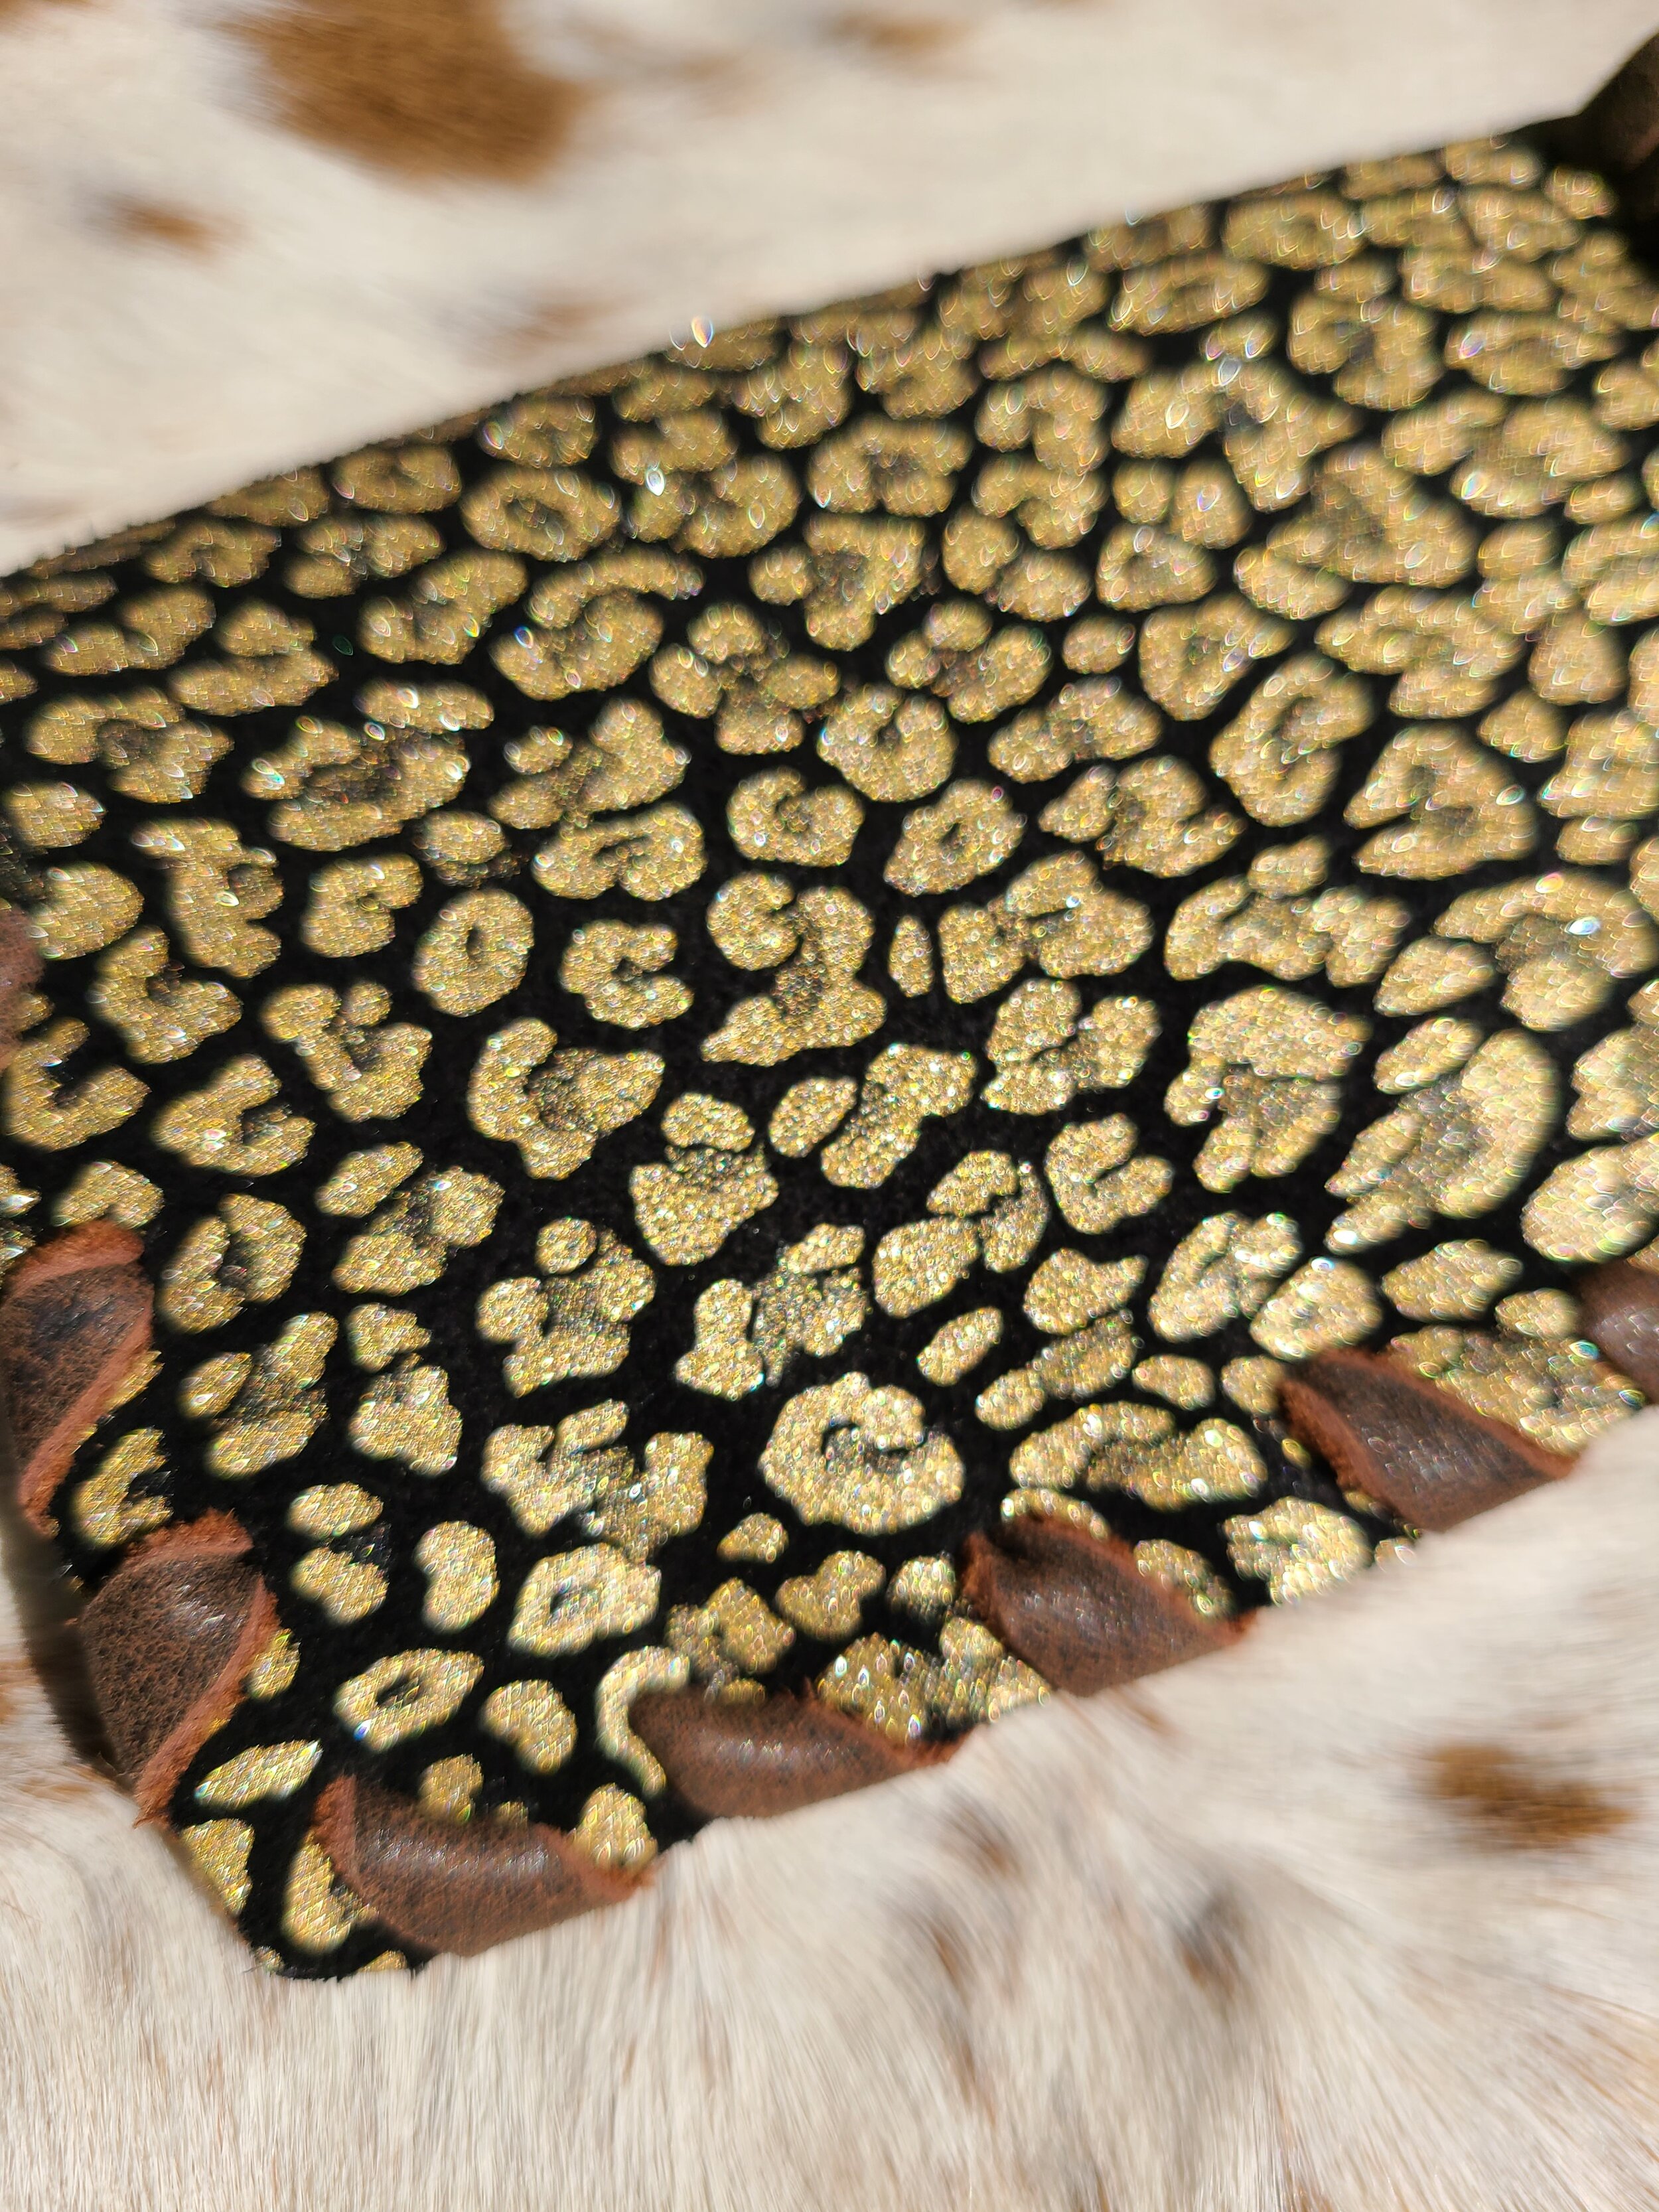 Louis Vuitton Repurposed Gold Leopard Coin Purse & Key Chain